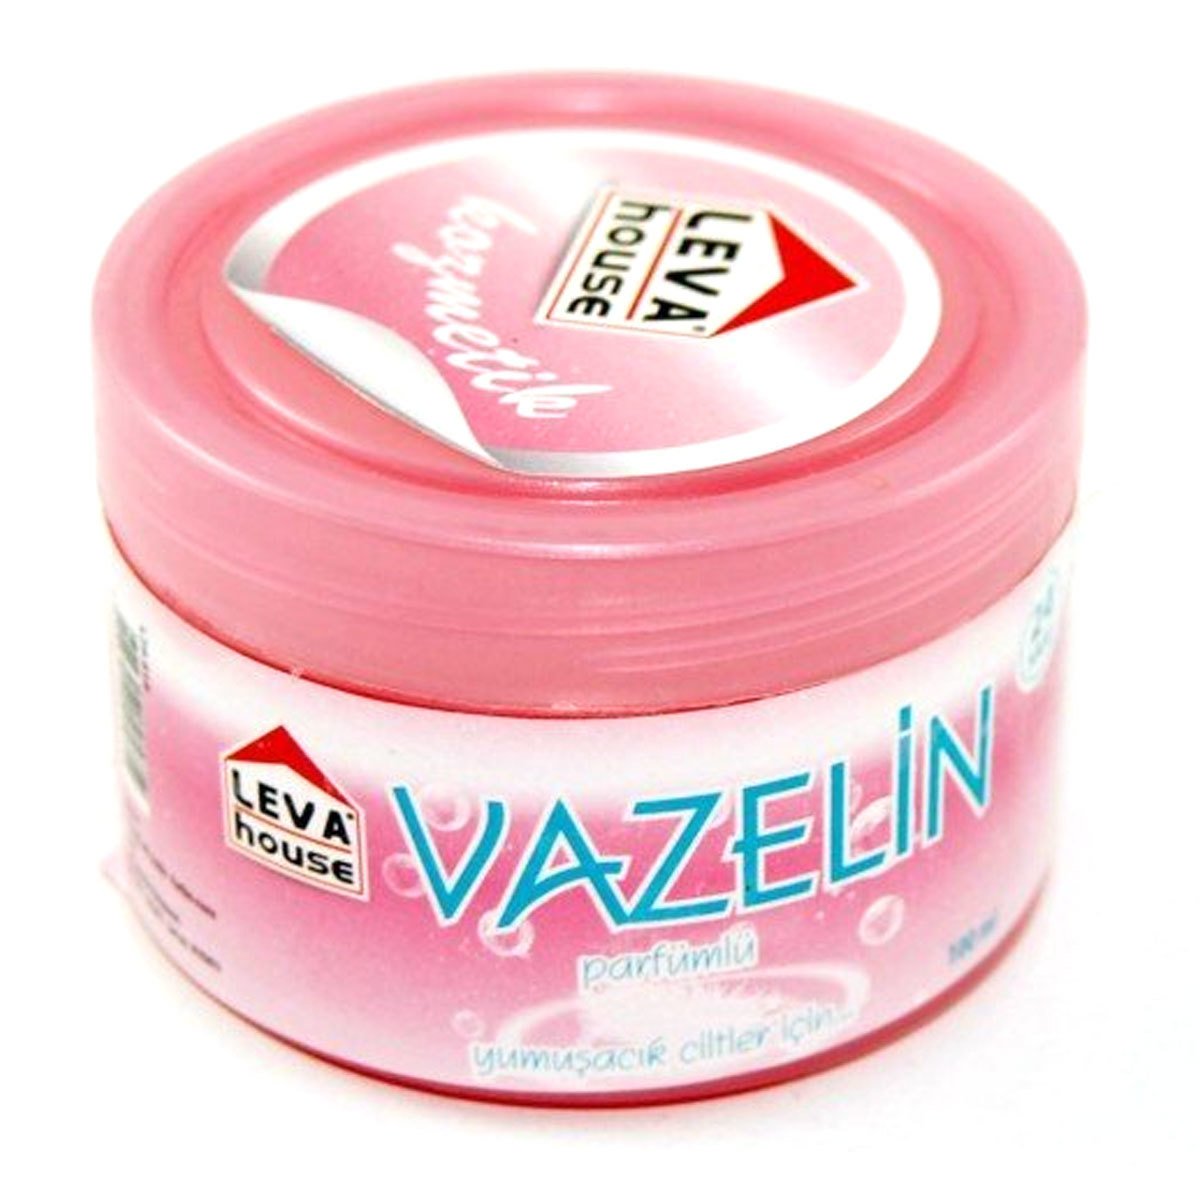 Leva House Parfümlü Vazelin